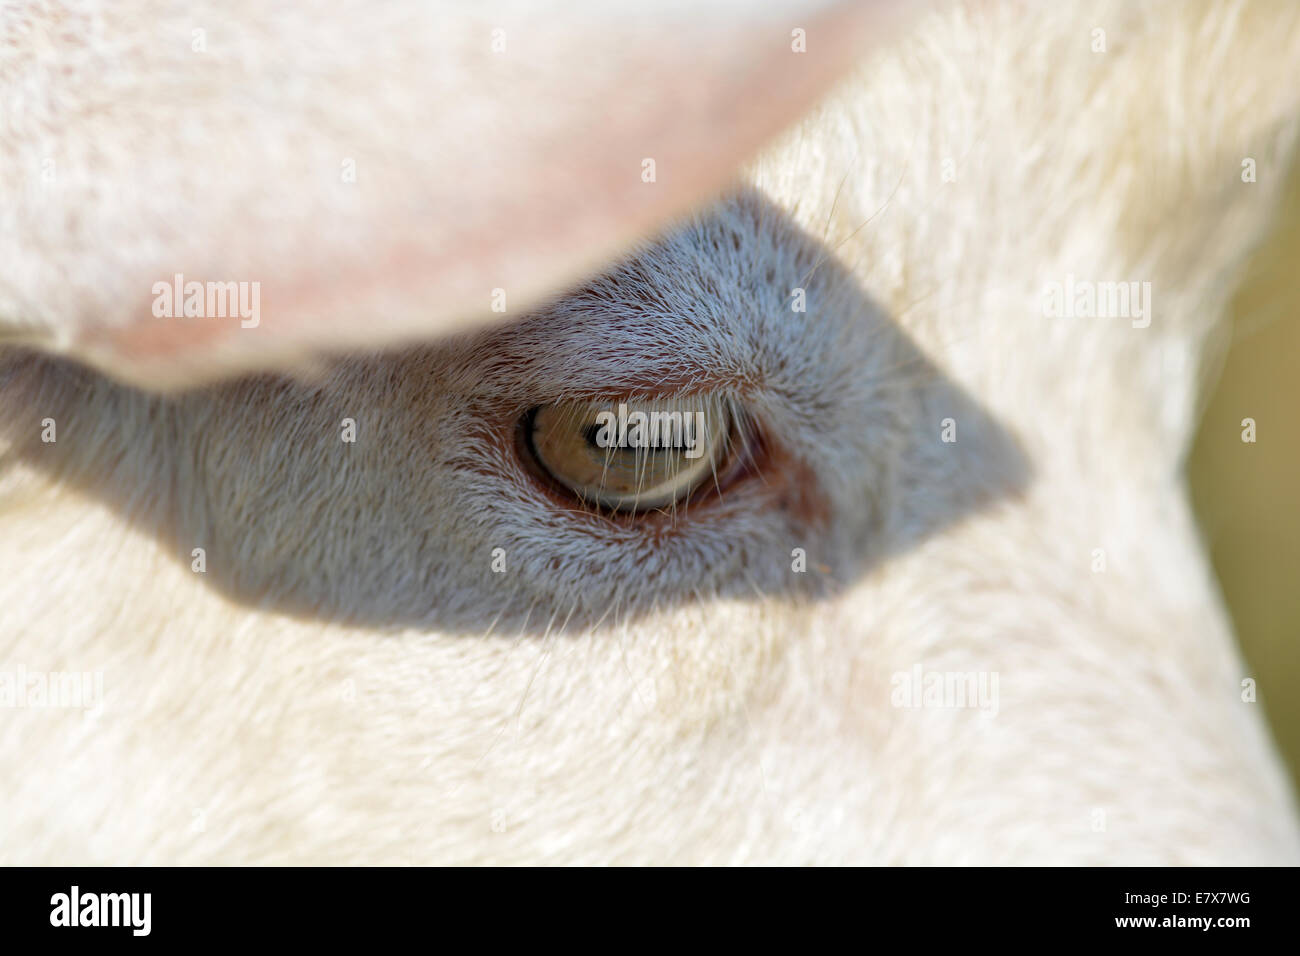 goat eye close up Stock Photo